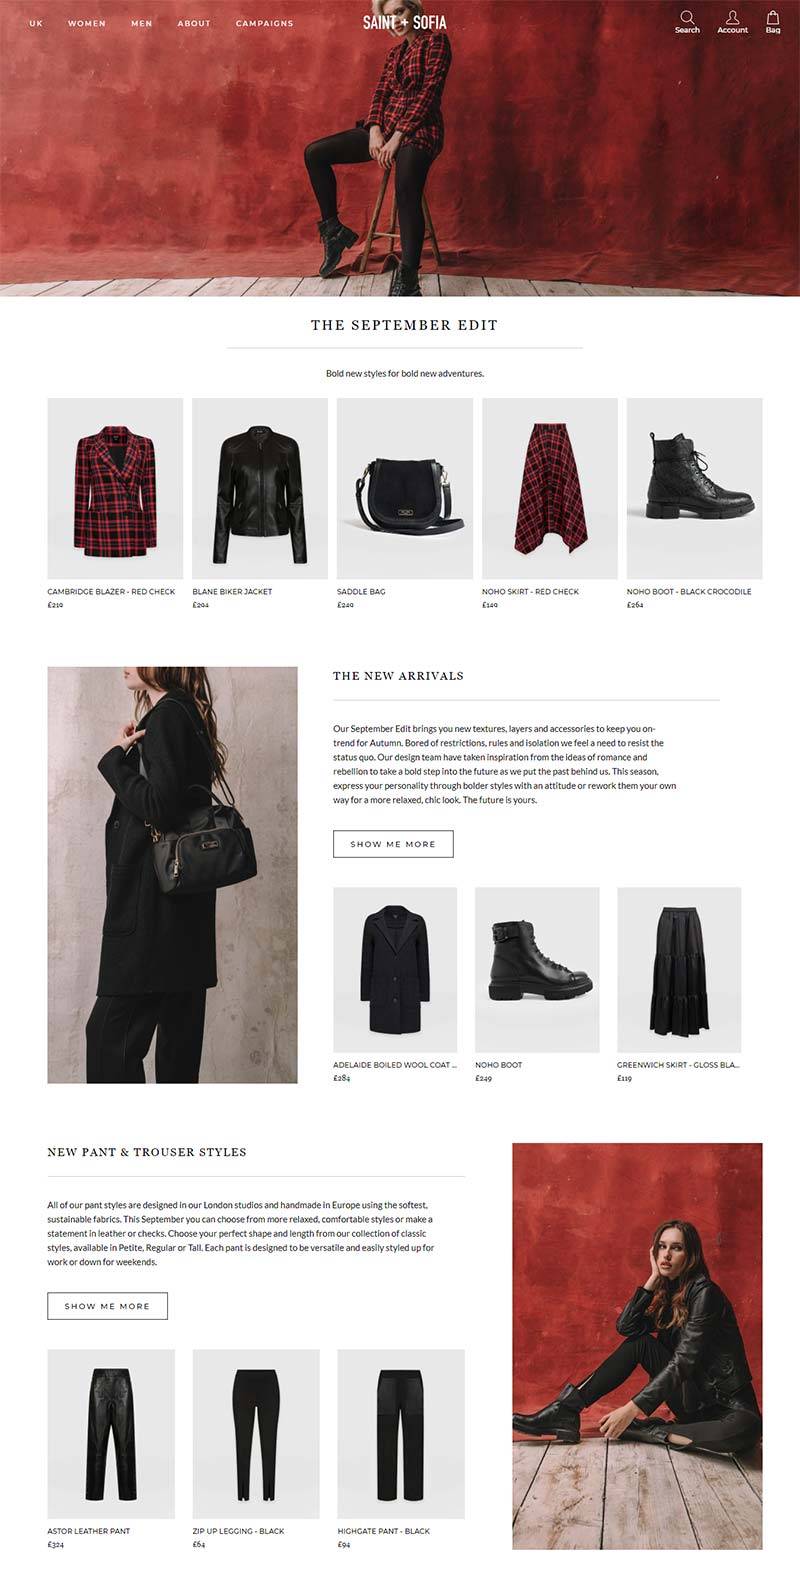 Saint & Sofia 英国时尚服饰品牌购物网站